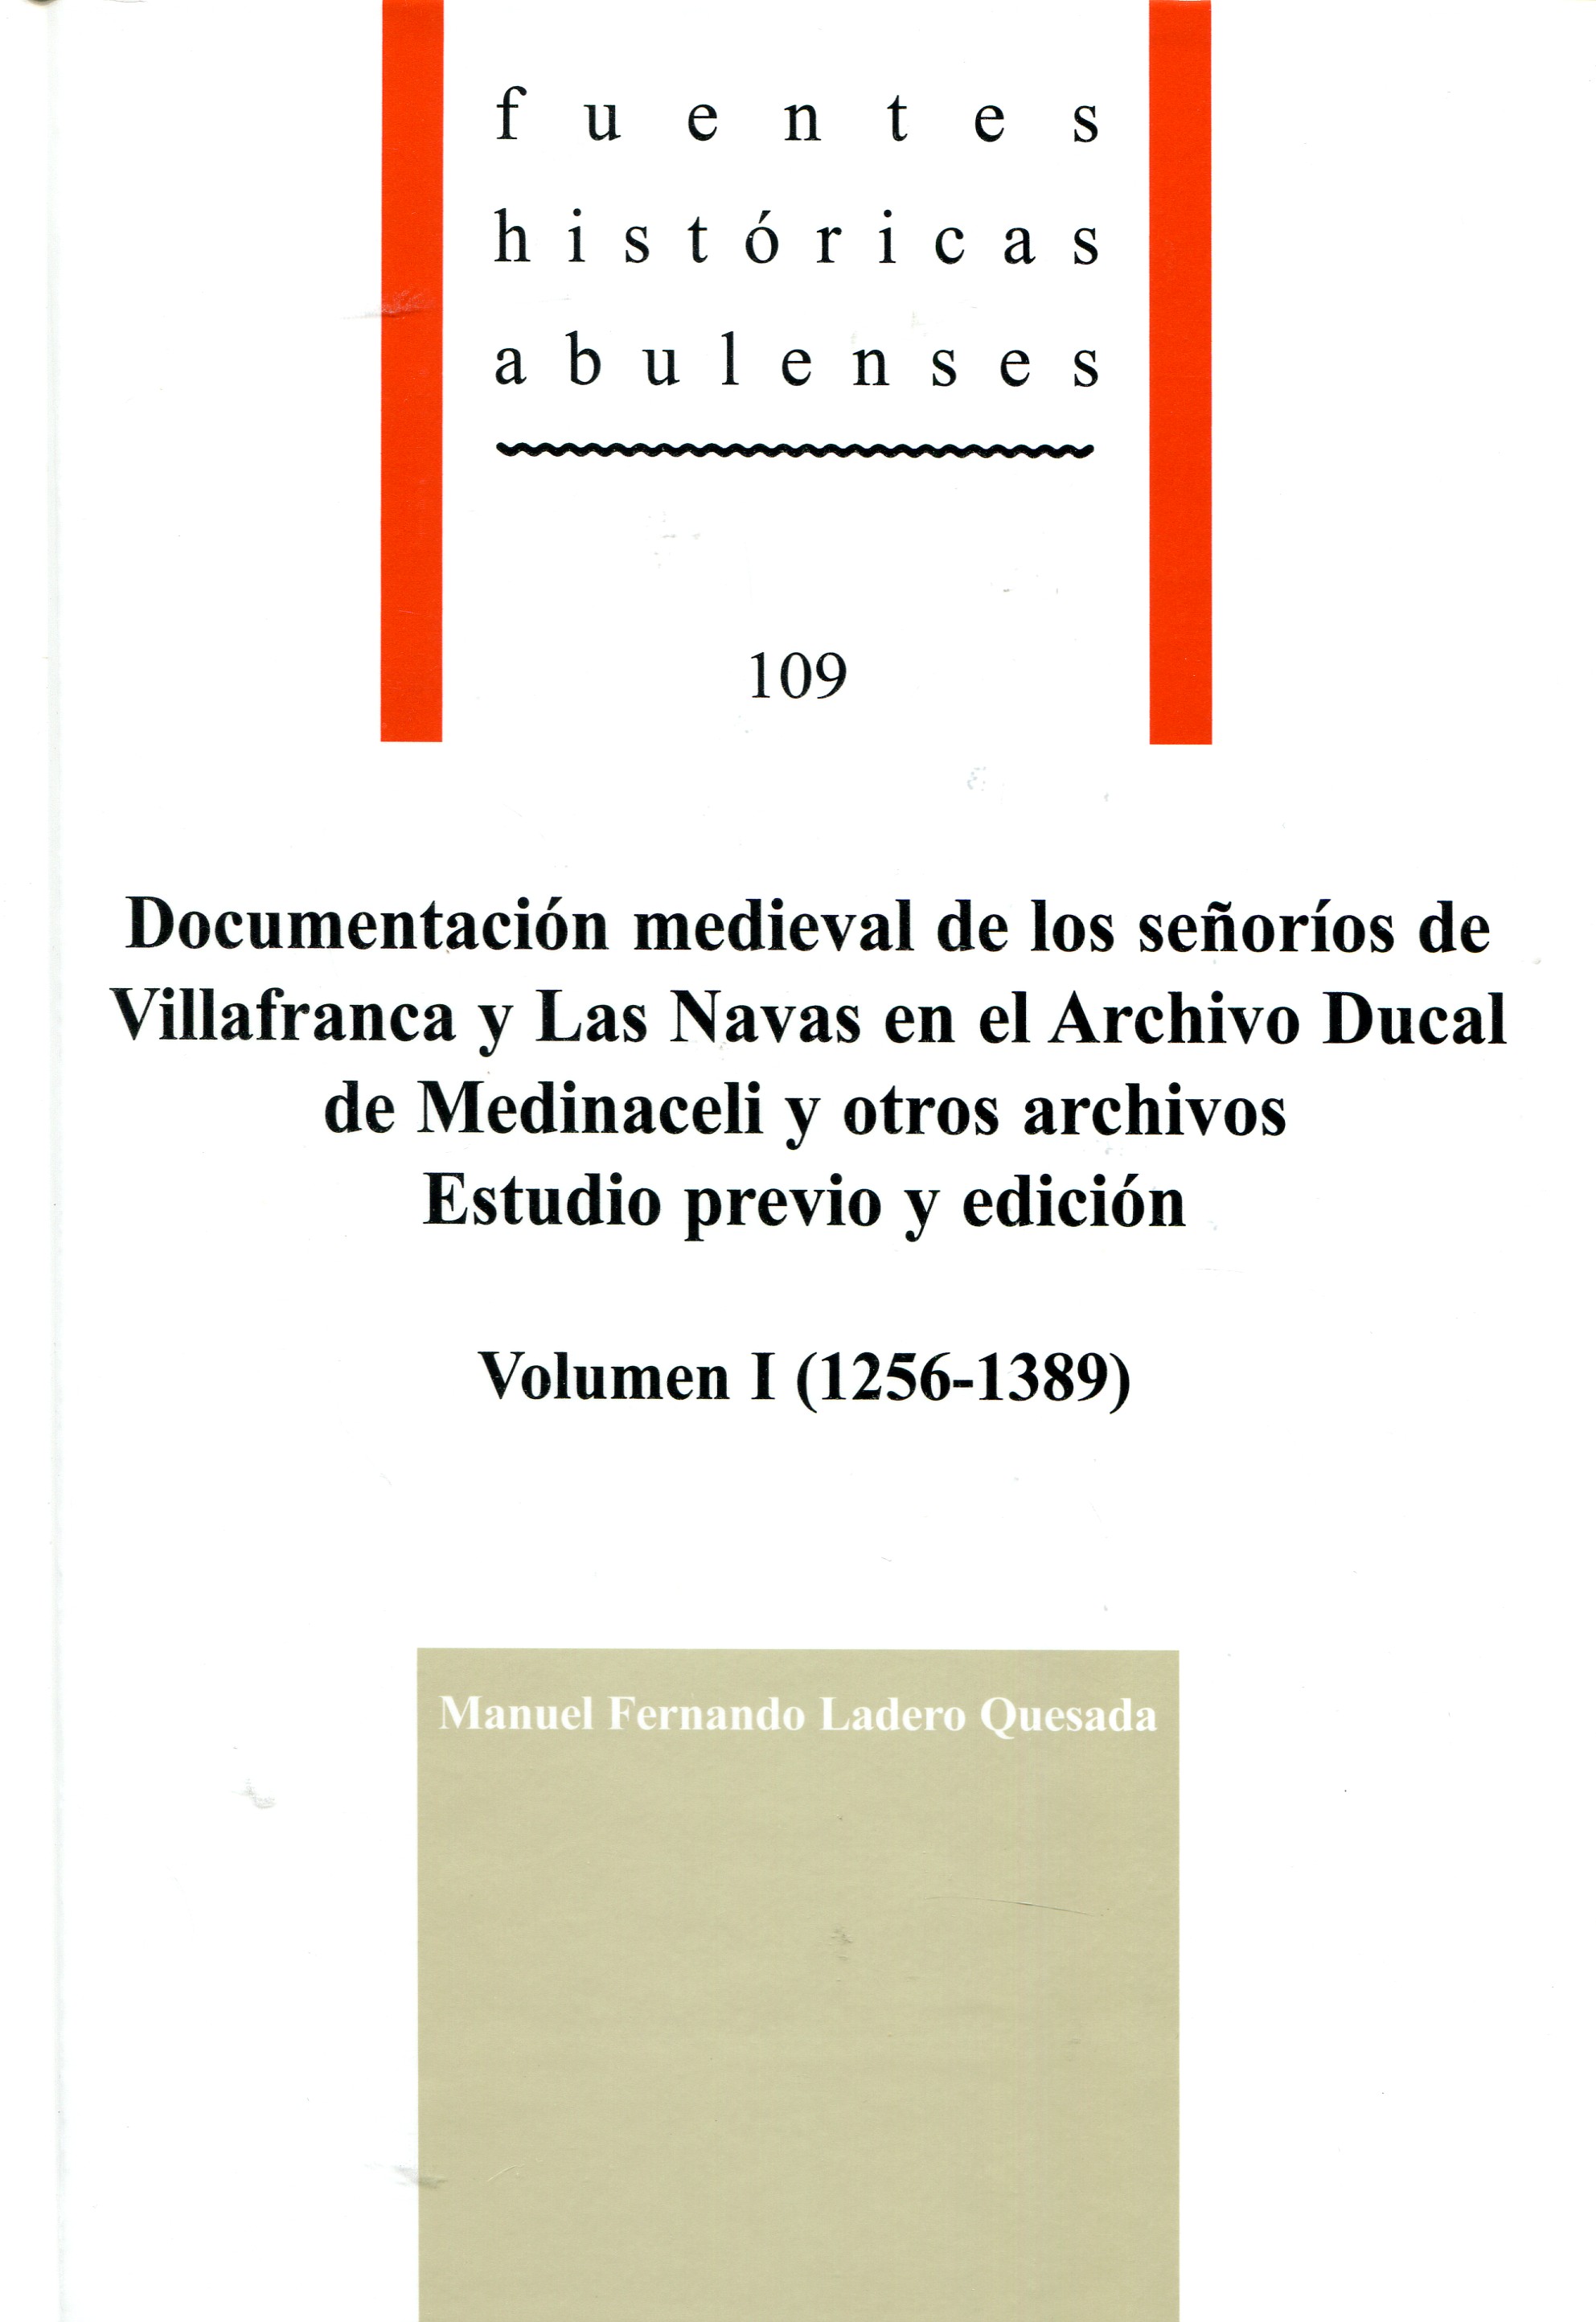 Documentación medieval de los Señoríos de Villafranca y Las Navas en el Archivo Ducal de Medinaceli y otros archivos: estudio previo y edición